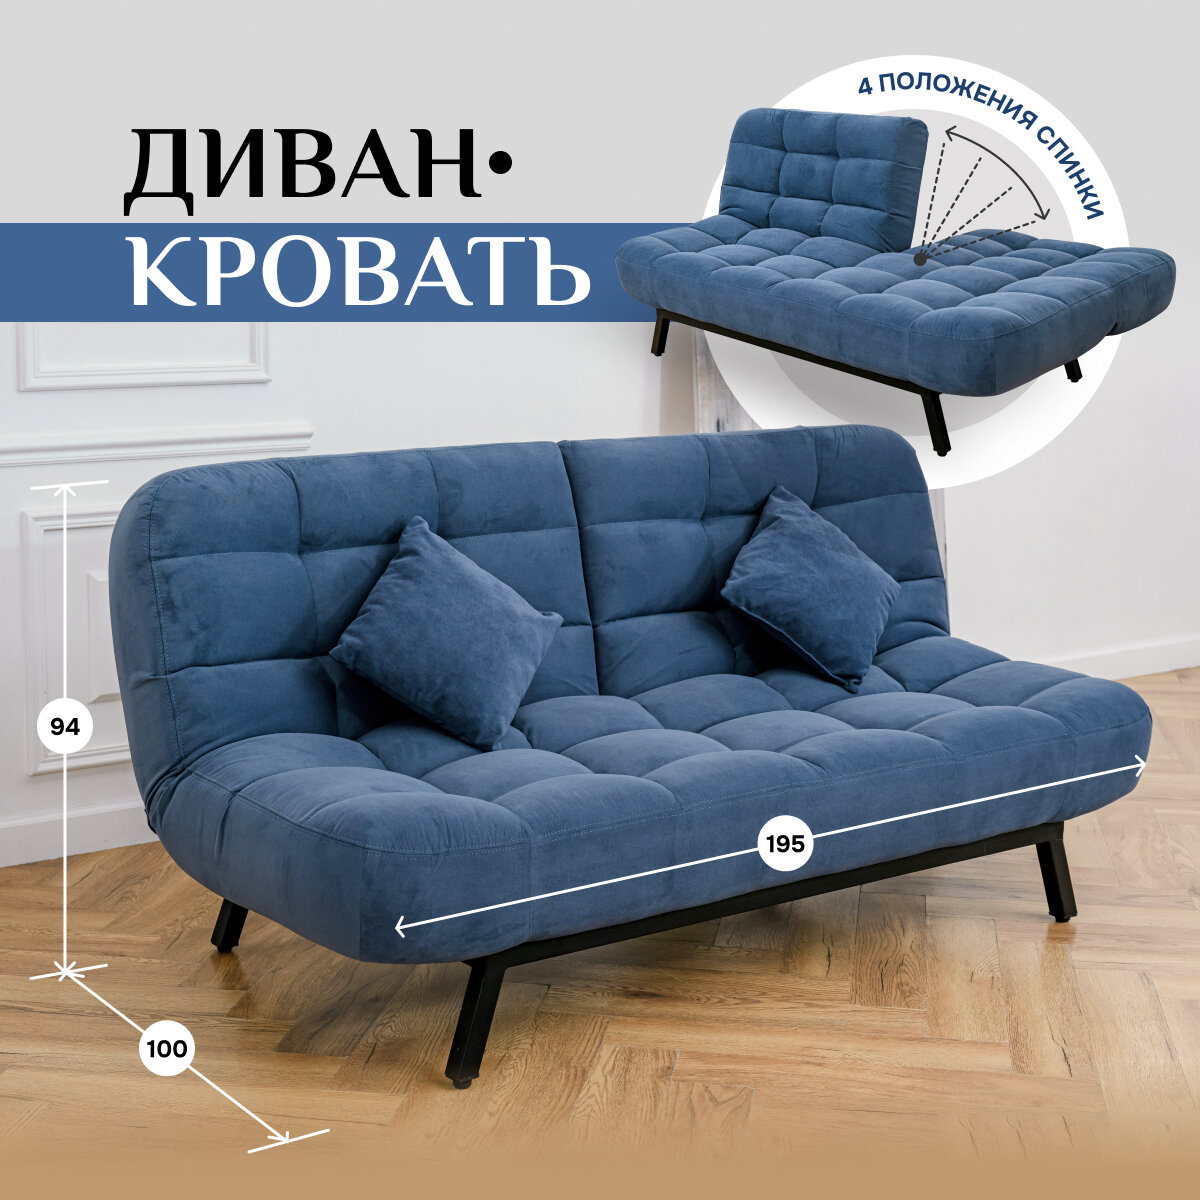 Диван-кровать Brendoss 304, прямой диван раскладной с двойной спинкой лофт, механизм клик-кляк, материал антивандальный велюр, синий, 195х100х90 см